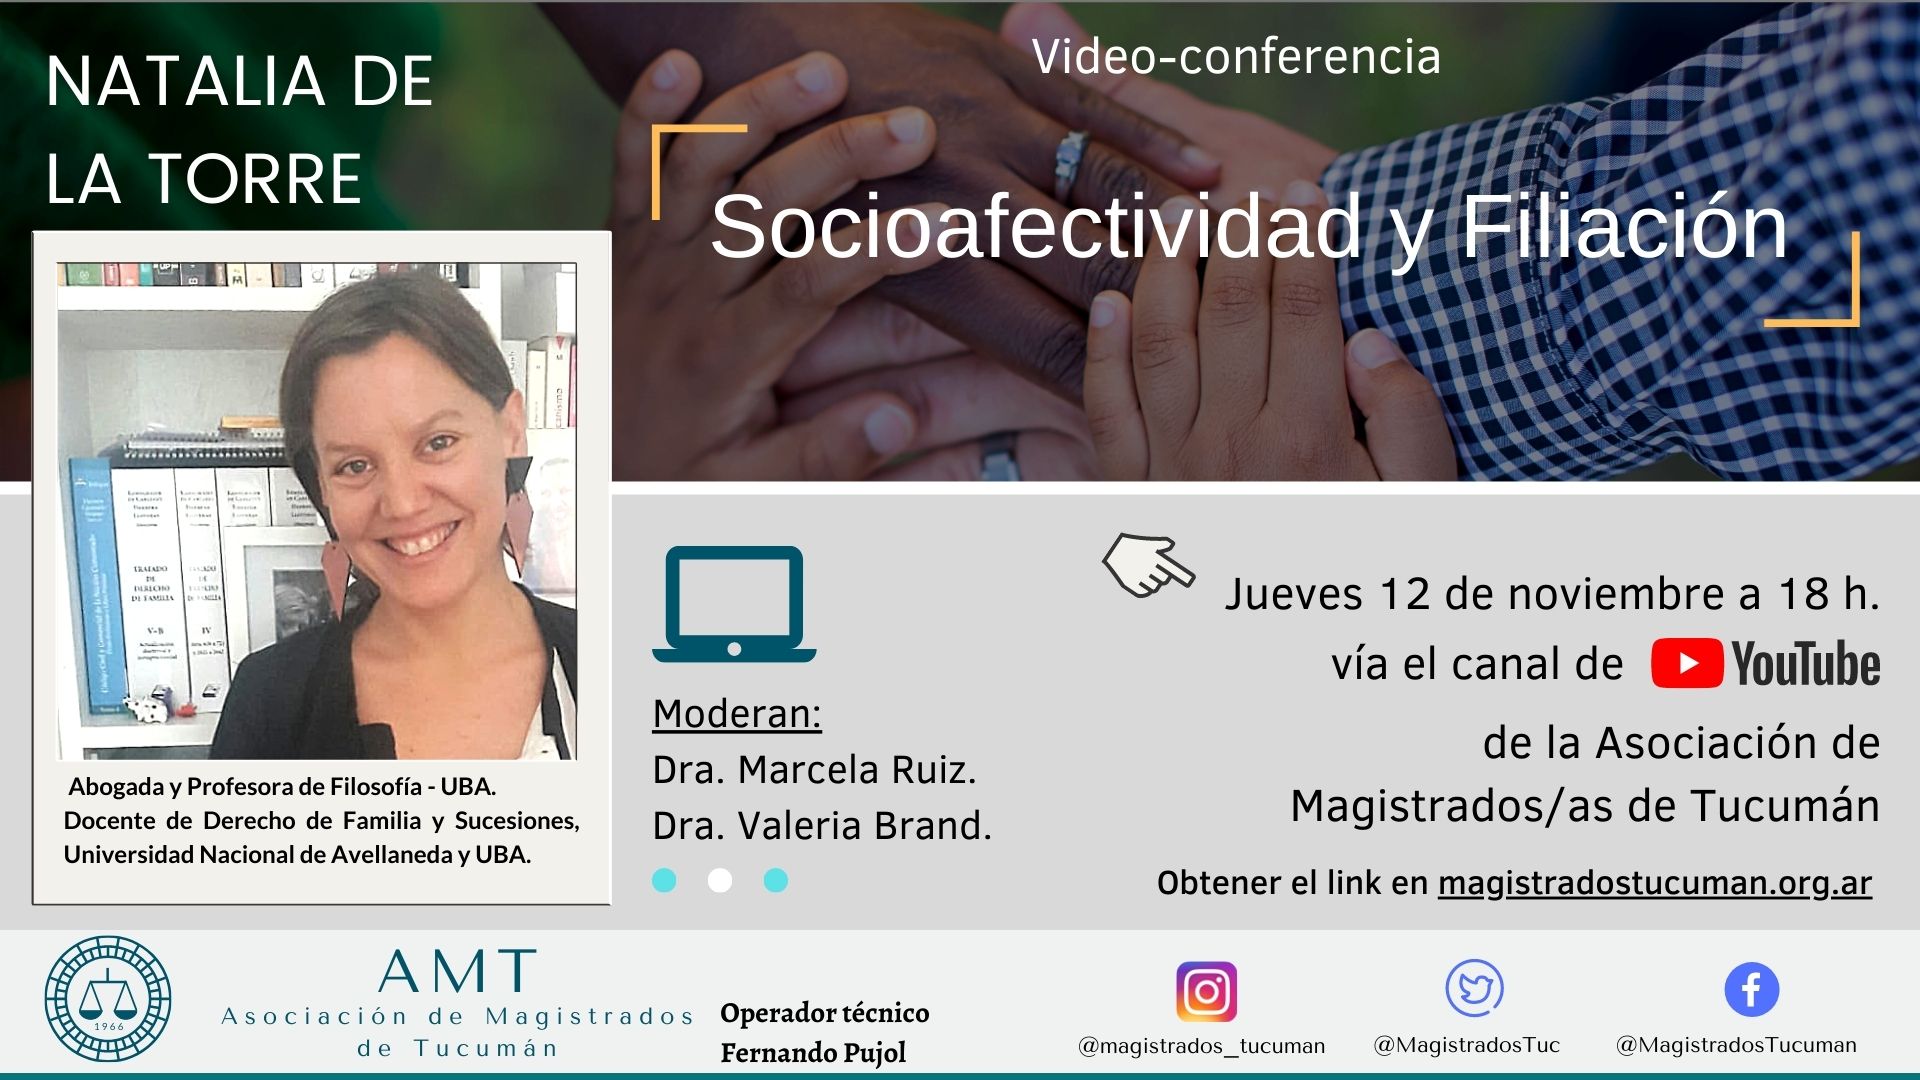 Vuelva a ver la conferencia de Natalia De La Torre – Socioafectividad y Filiación